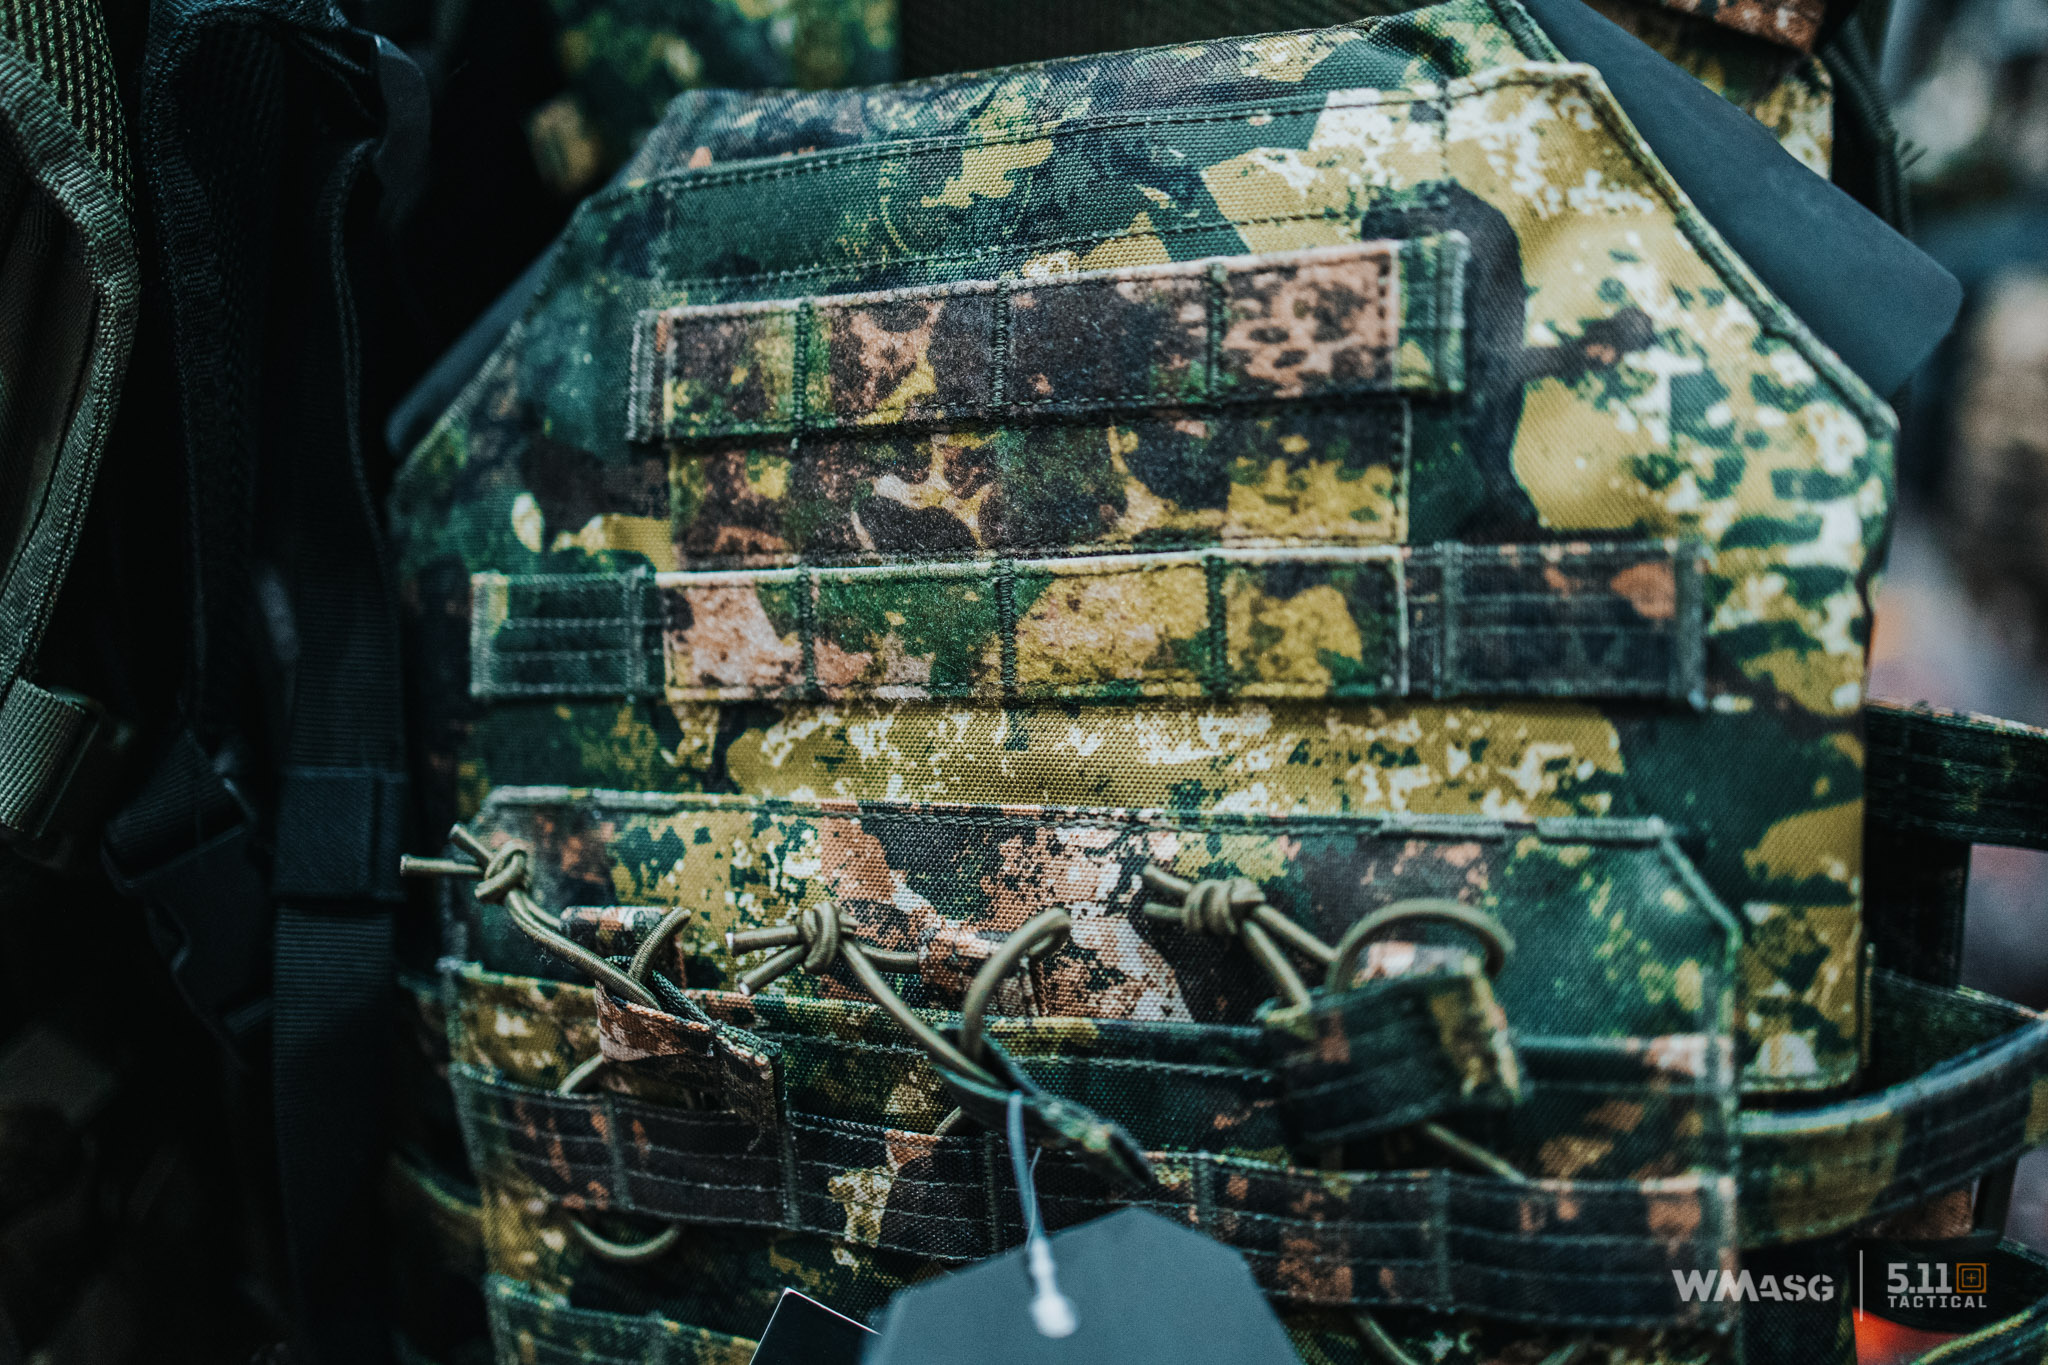 Bonnet Militaire Camouflage MIL-TEC